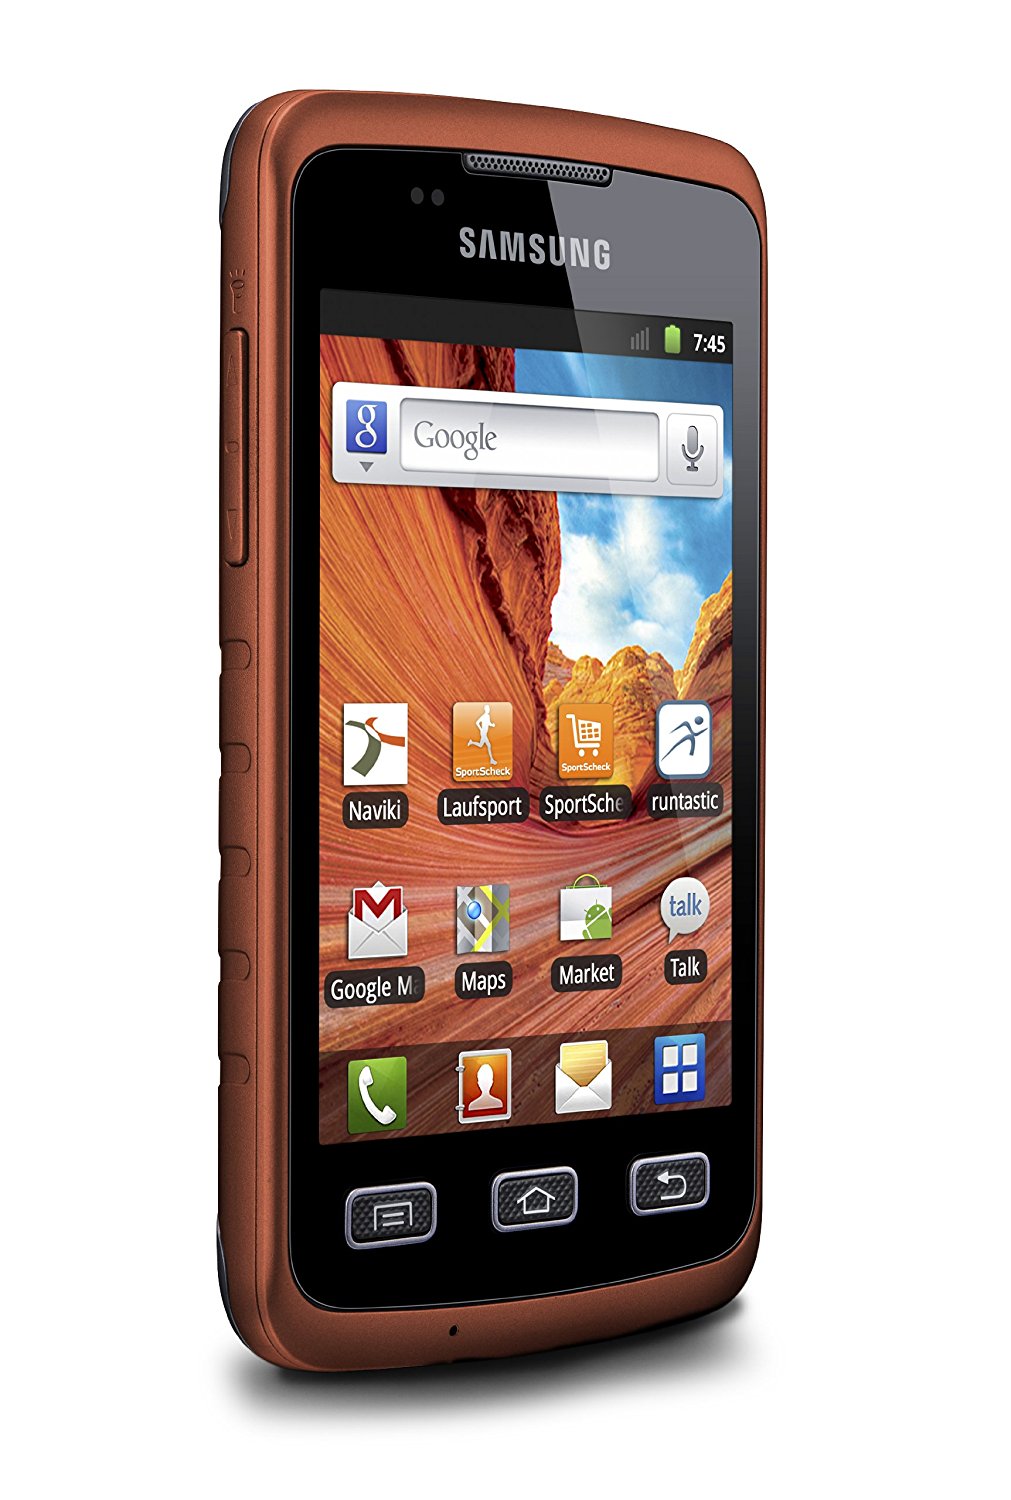 Telefoni Impermeabili Smartphone Resistente Allacqua E Polvere Samsung S5690 Galaxy Xcover